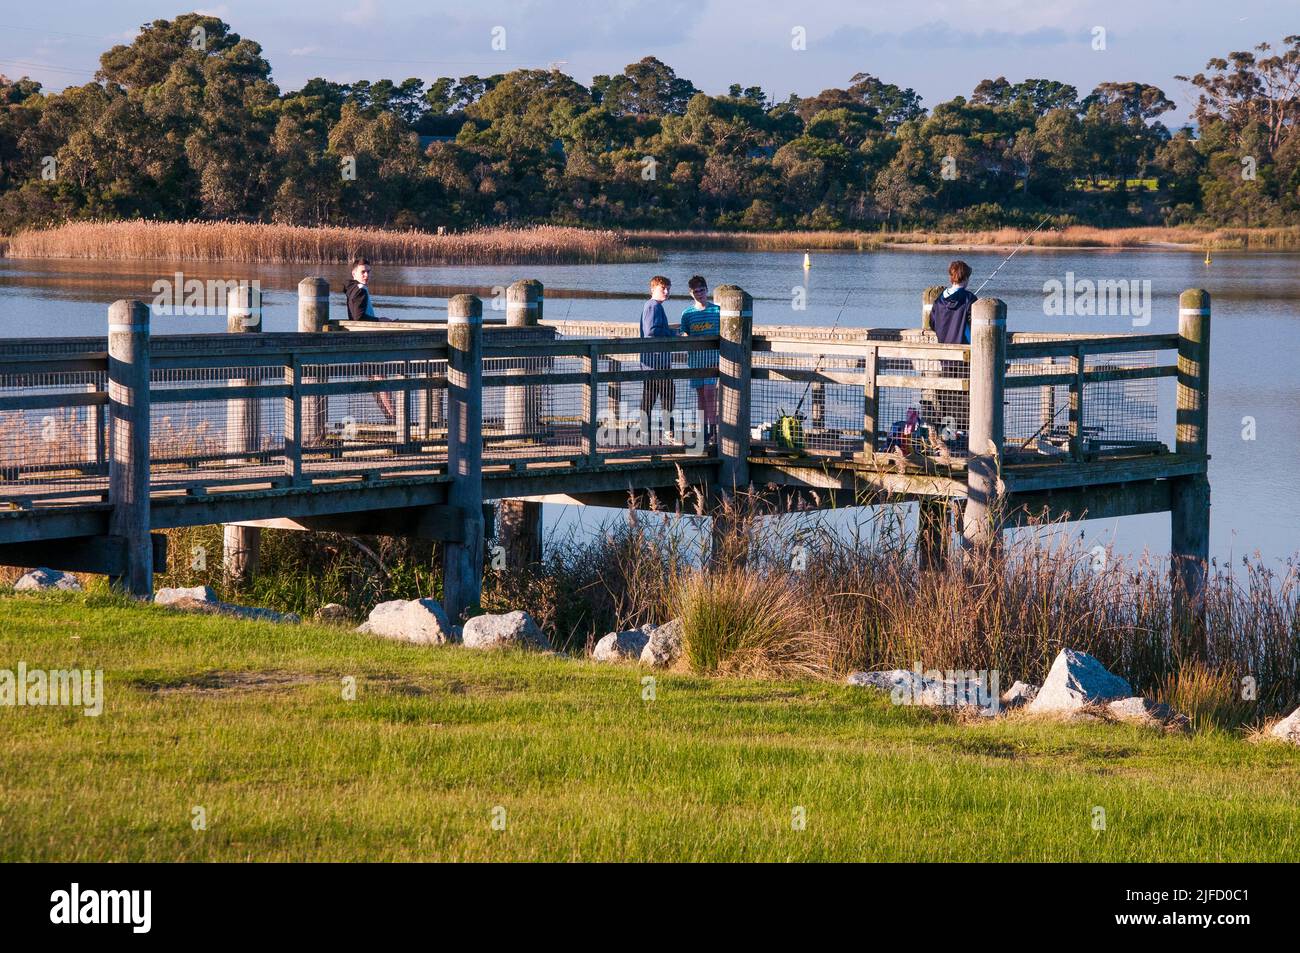 Der Karkarook Park ist ein 15 ha großer metropolitan Park in Moorabbin, Melbourne, Victoria, Australien, der ein von Menschenhand geschapptes Feuchtgebiet und einen See mit Fischen umfasst Stockfoto